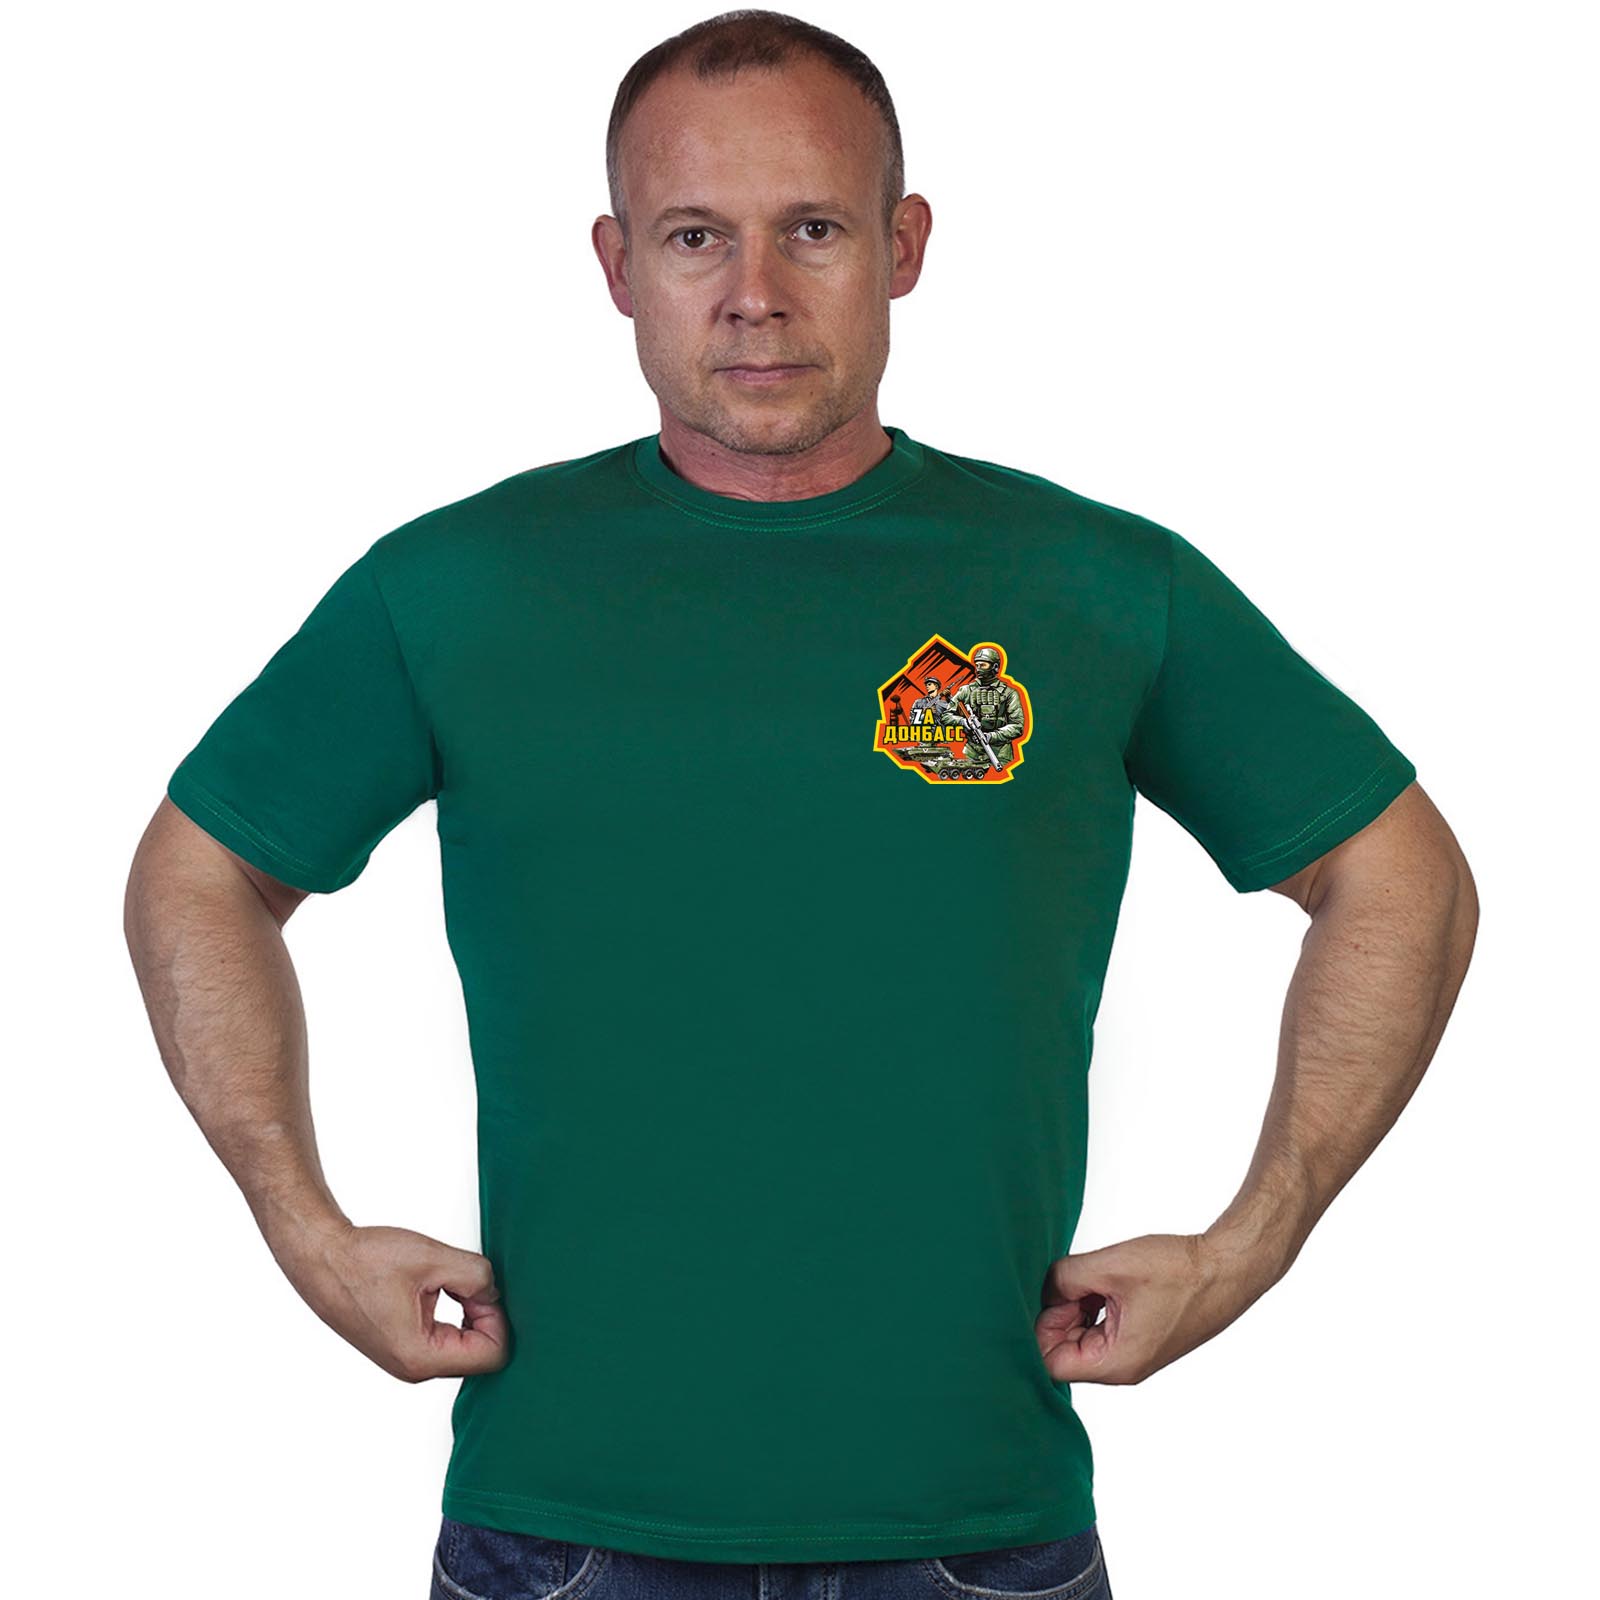 Зелёная футболка с термопереводкой "Zа Донбасс"